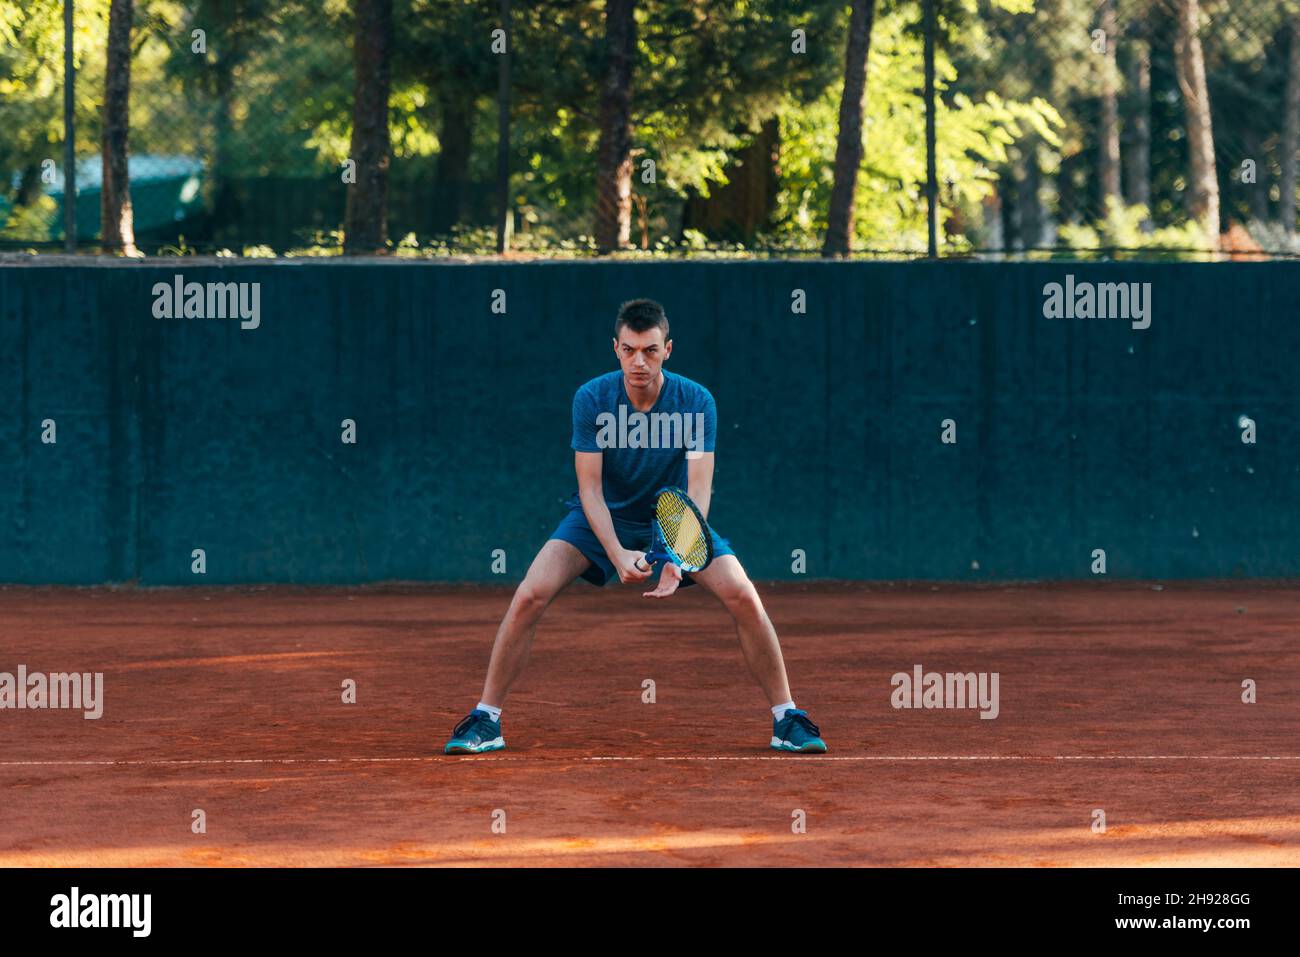 Athlète masculin concentré en attente de recevoir le ballon dans un jeu de tennis professionnel Banque D'Images